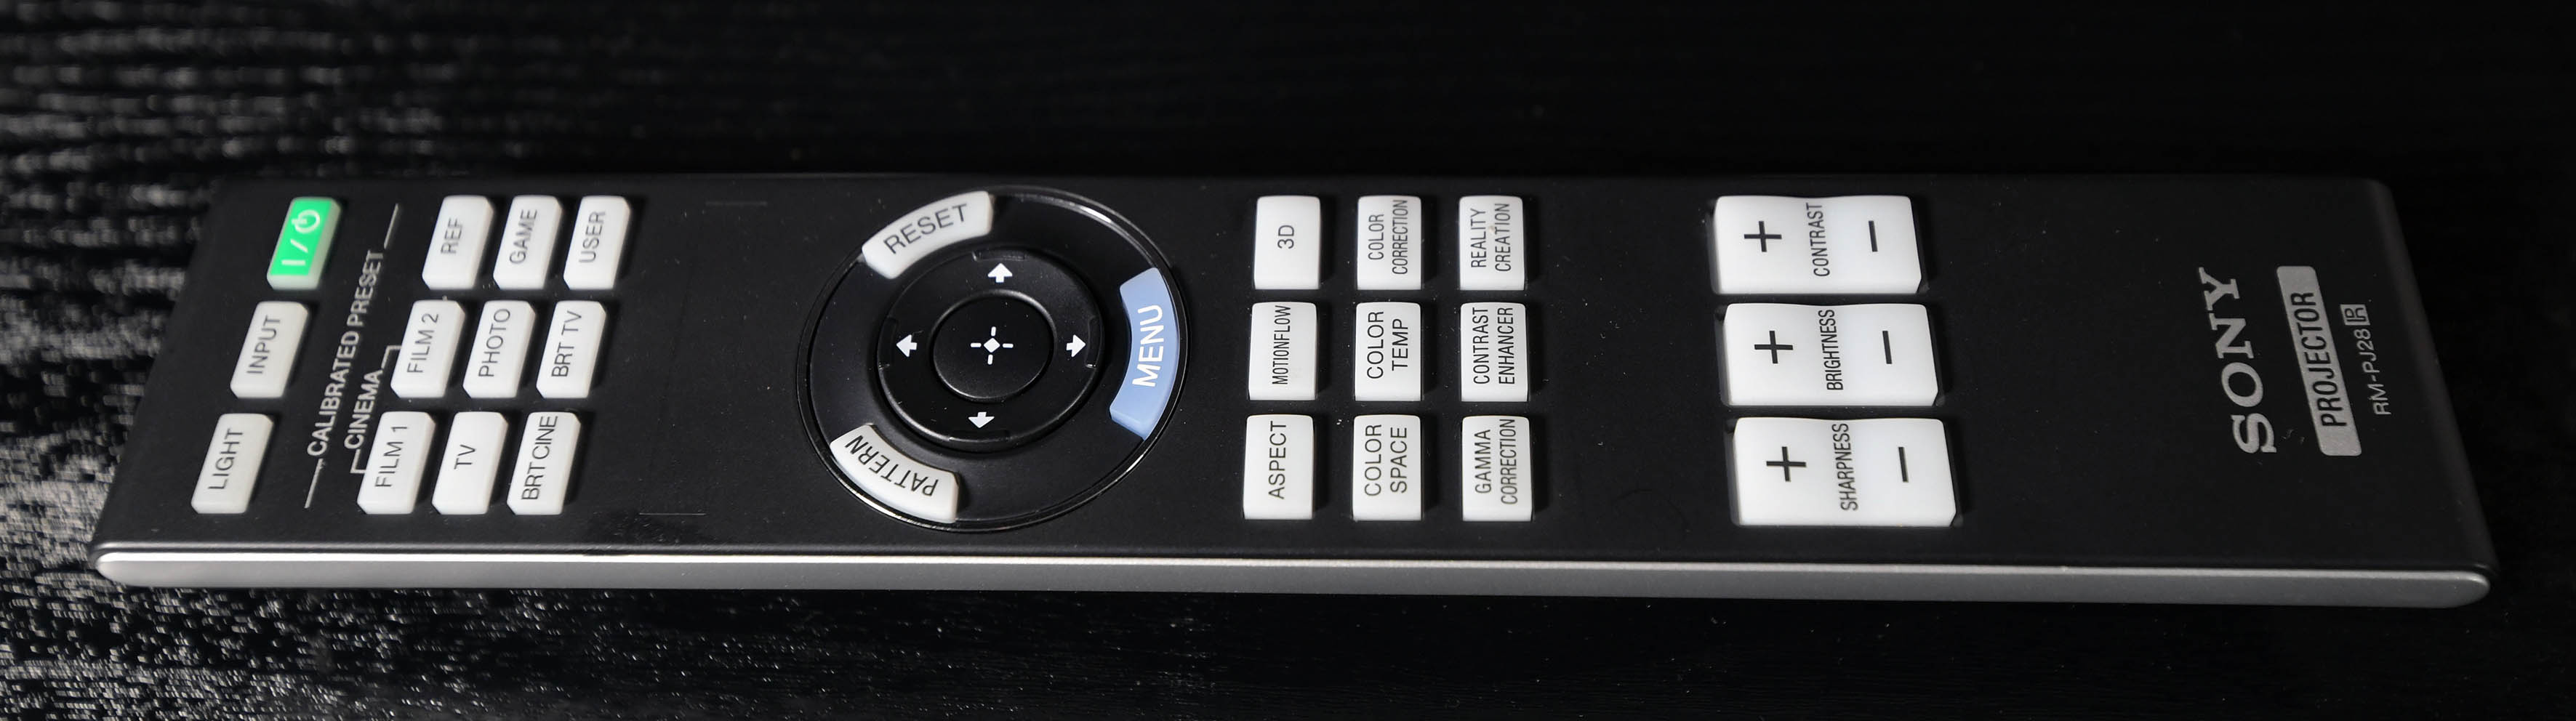  Foto: Michael B. Rehders Die Tasten der Fernbedienung des Sony VPL-VW270 werden blau beleuchtet, um im dunklen Heimkino schnell und präzise durchs On-Screen-Menü zu navigieren.